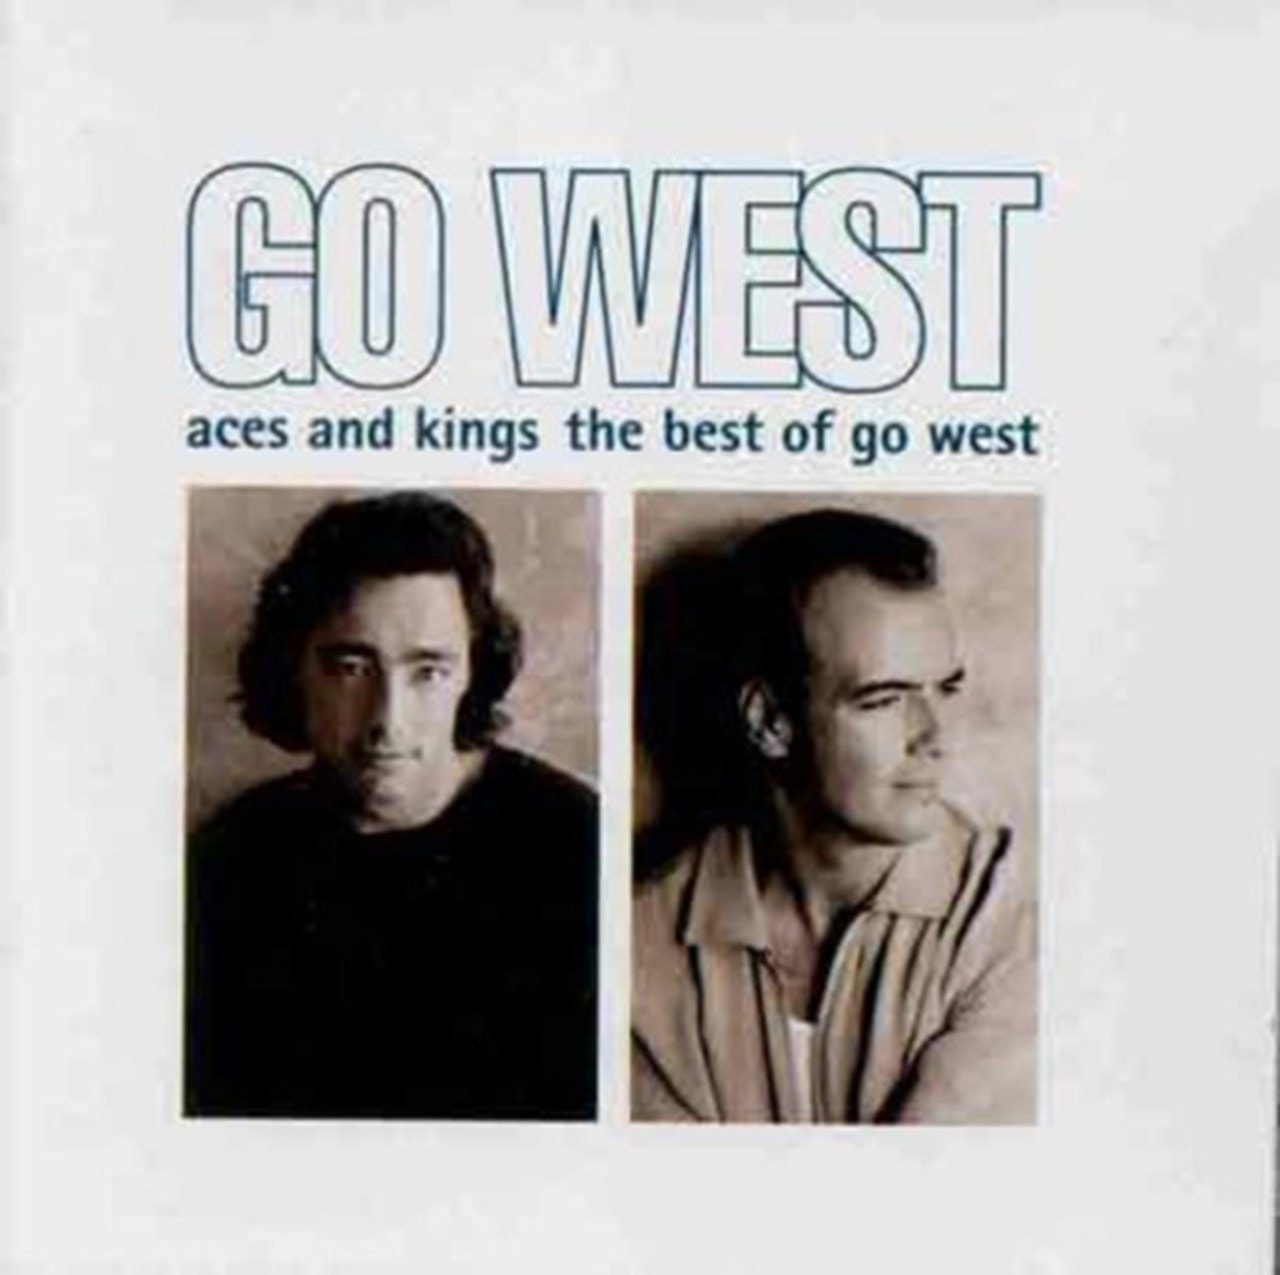 Гоу вест. Go West. Исполнитель песни go West. Go West обложка сингла. Go West (1993) Aces and Kings (the best of).